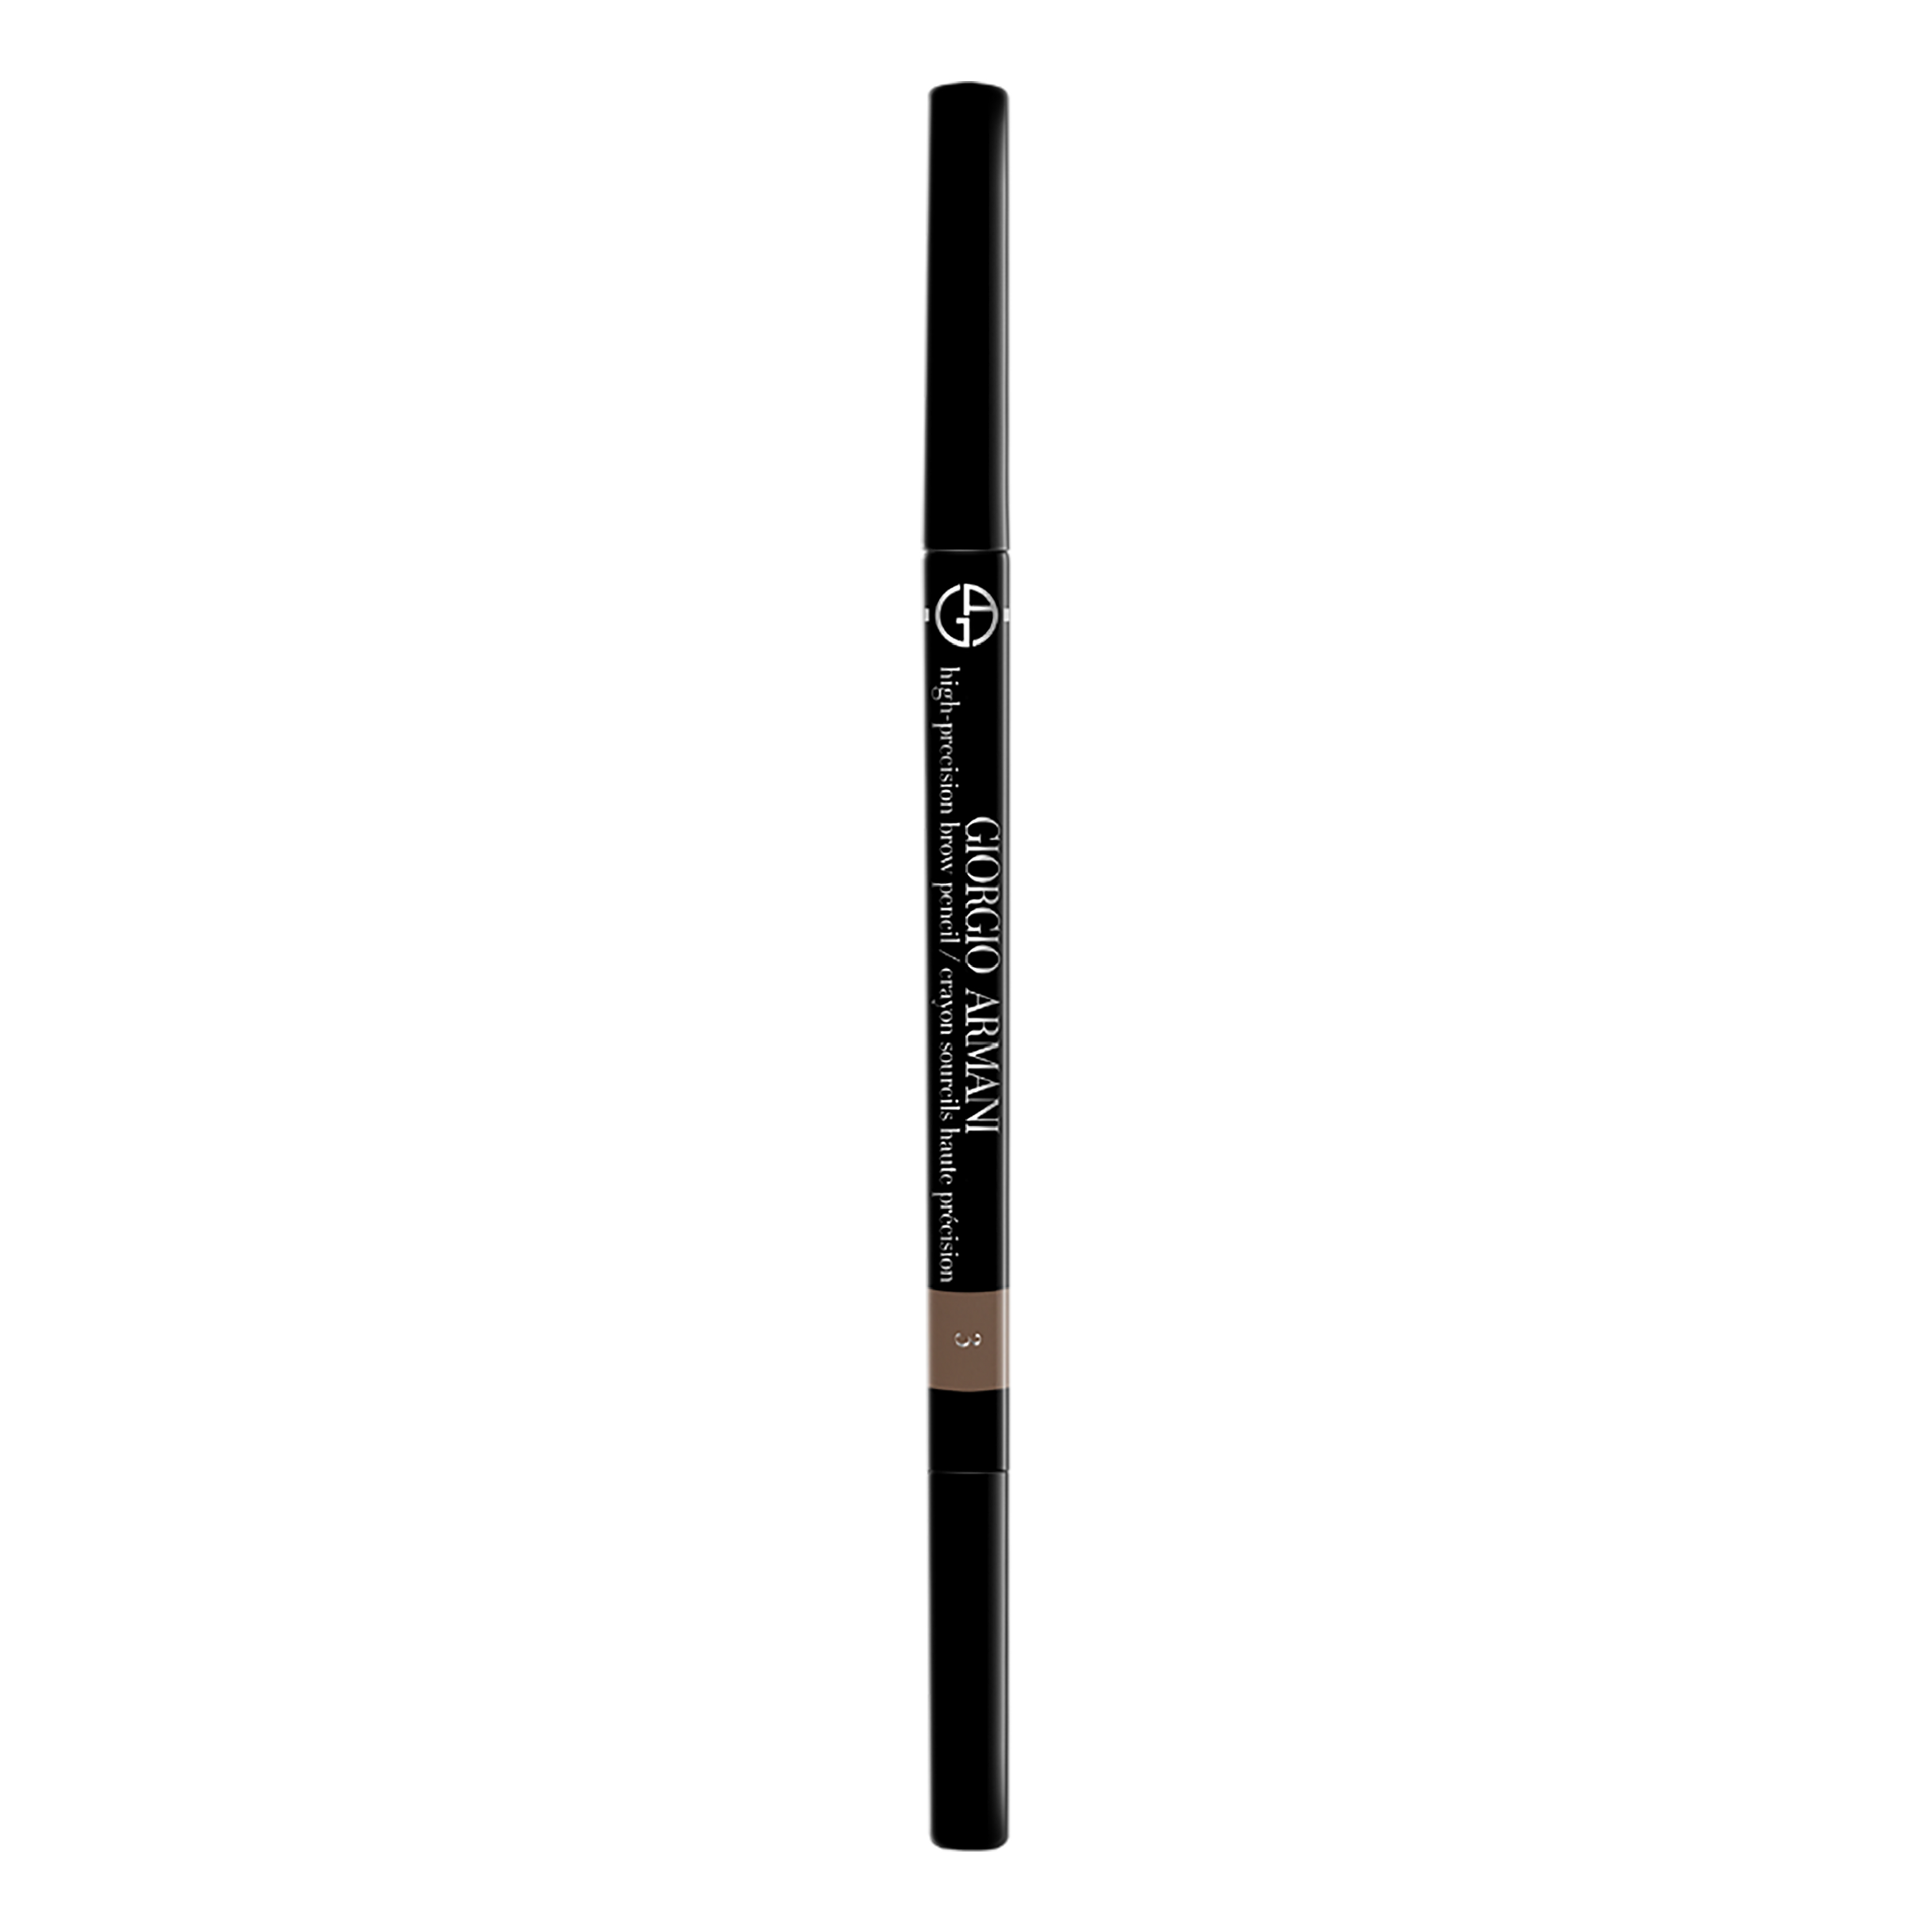 Armani High Precision Brow Pencil Matita Per
 Sopracciglia 1